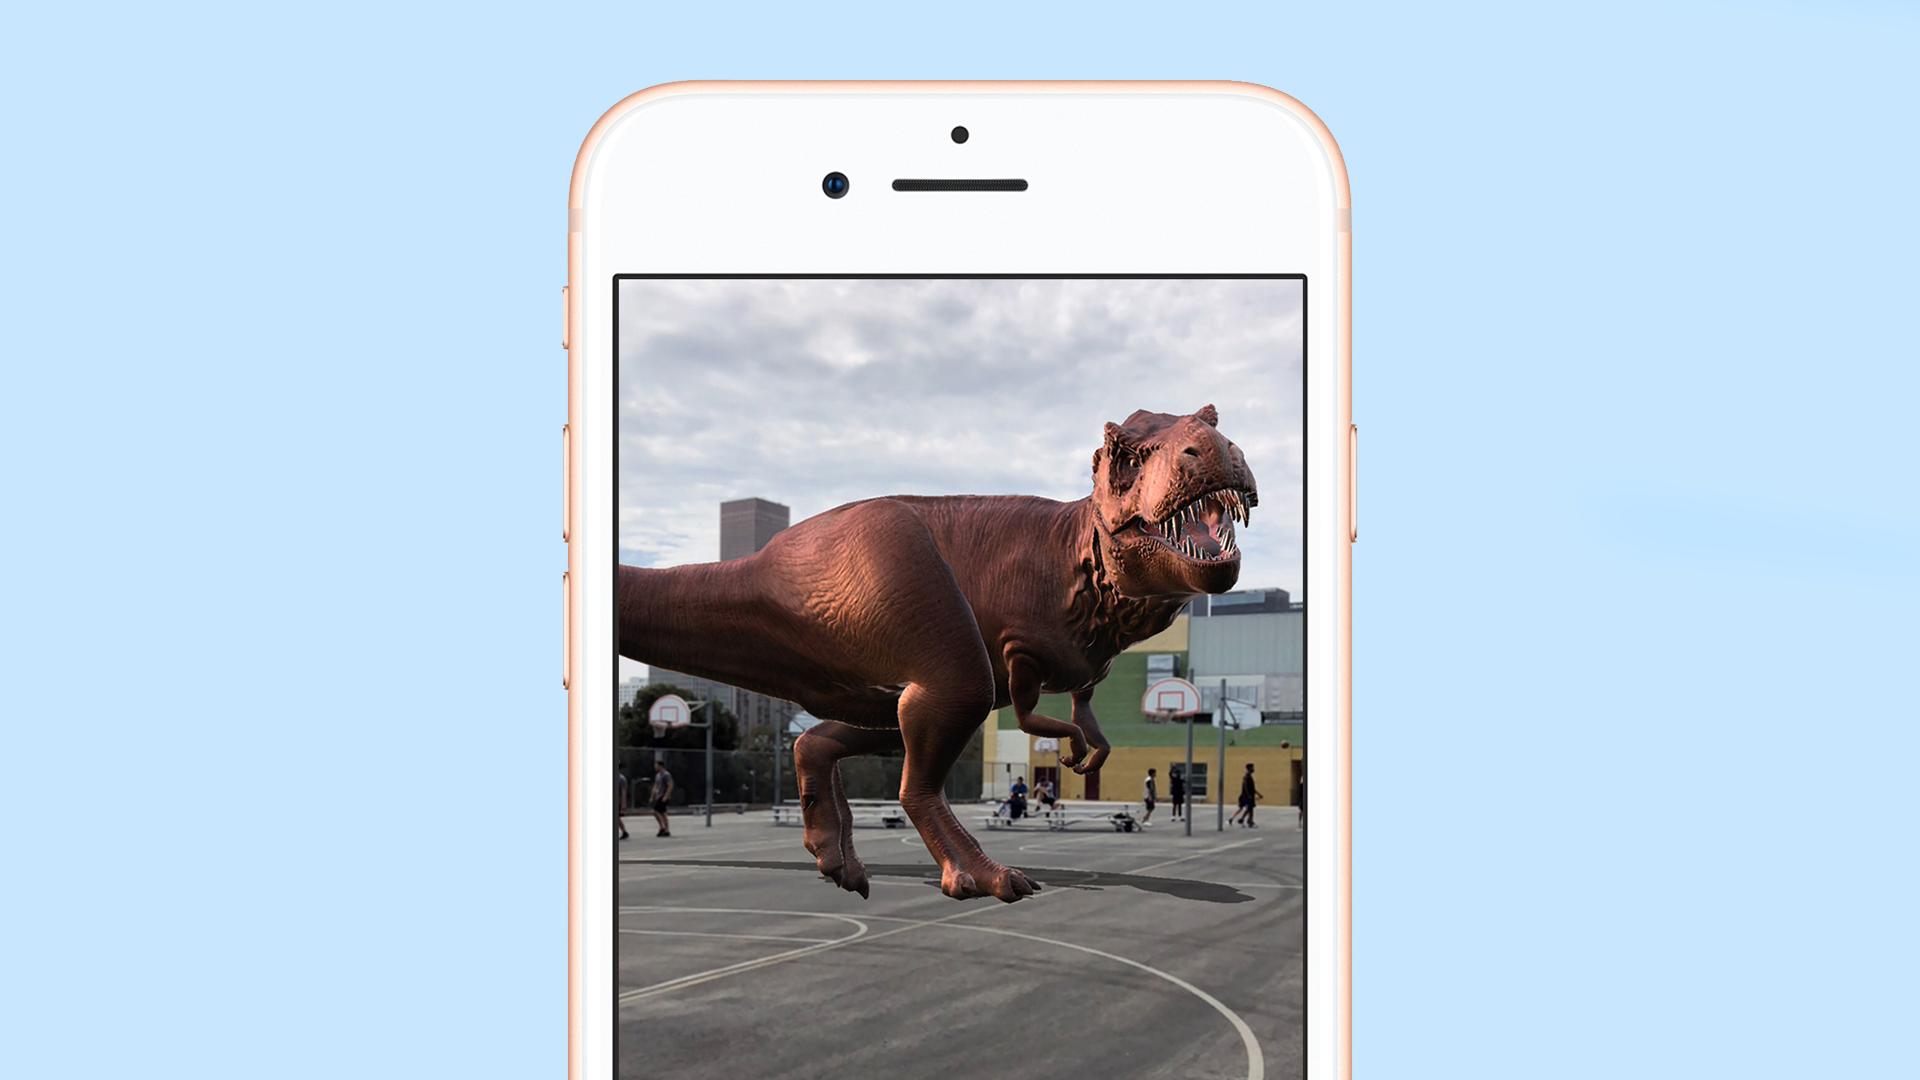 An AR scene on an iPhone running iOS 11